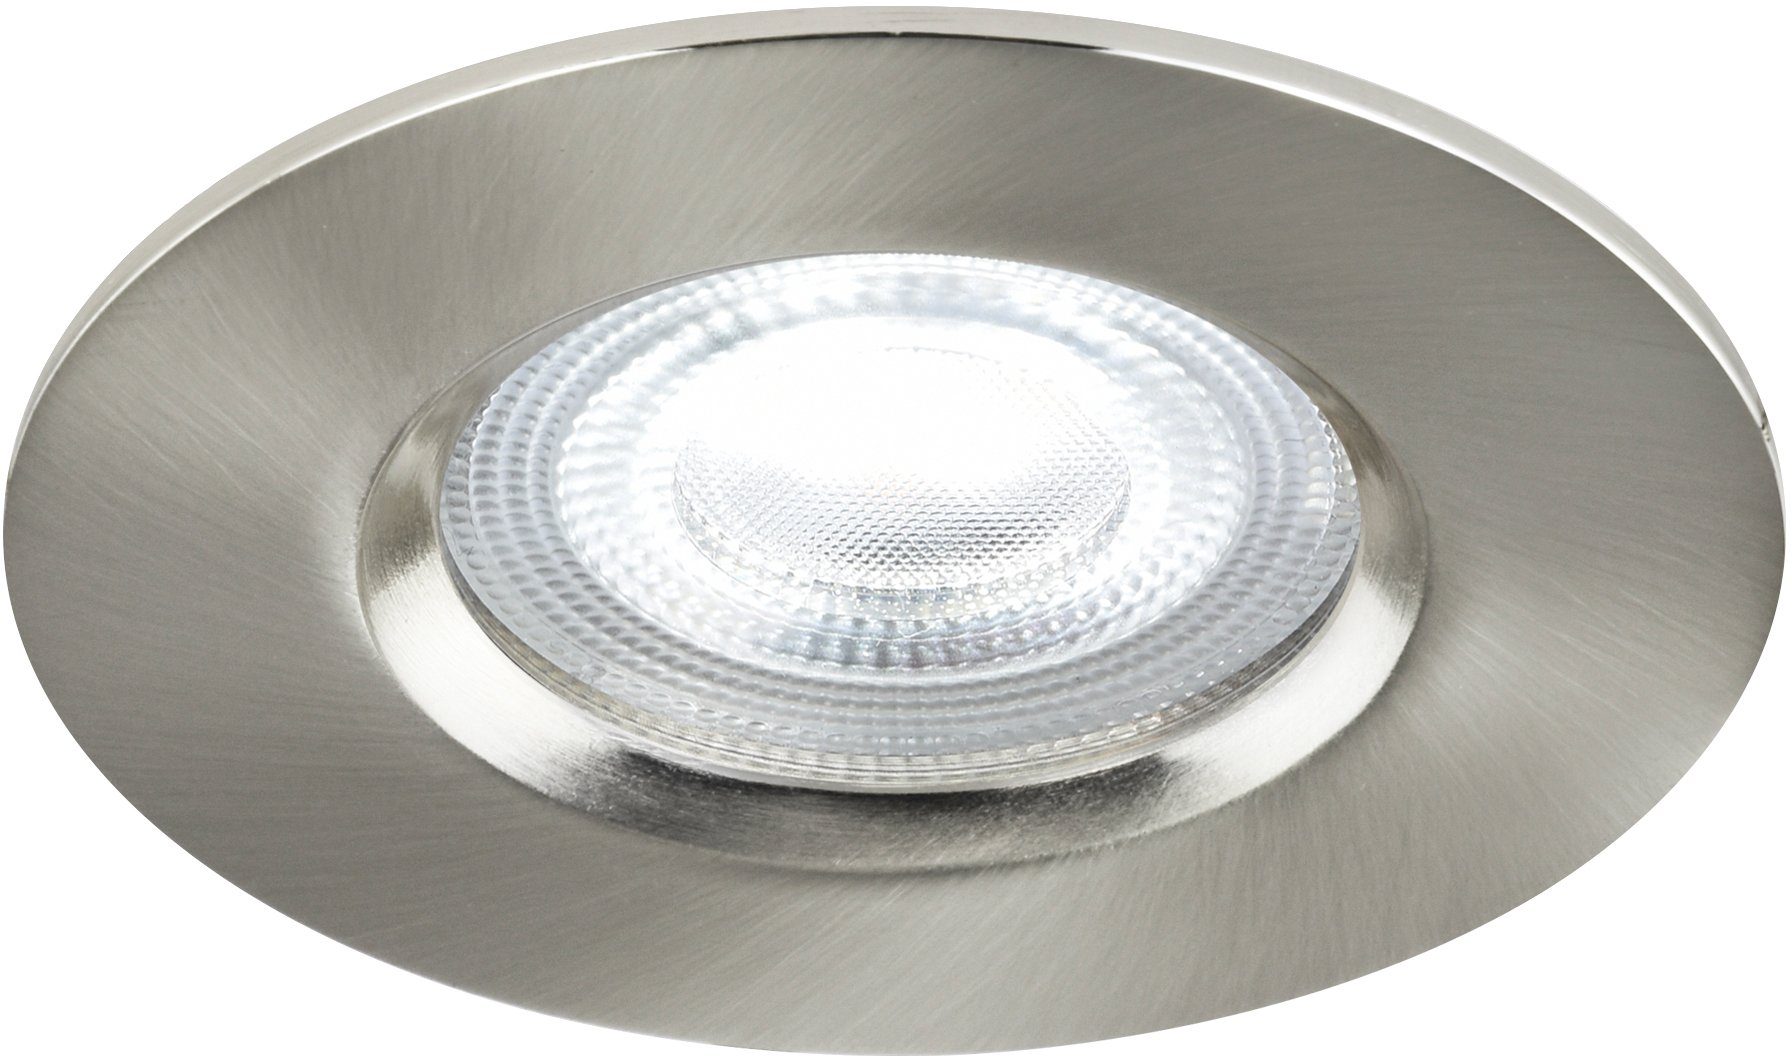 Nordlux Smarte LED-Leuchte Smartlicht, LED fest integriert, warmweiß -  kaltweiß, inkl. 4,7W LED, 320 Lumen, Dim to Warm, Smarte Leuchte, inkl.  Smart Home Leuchmtittel zum steuern des Licht